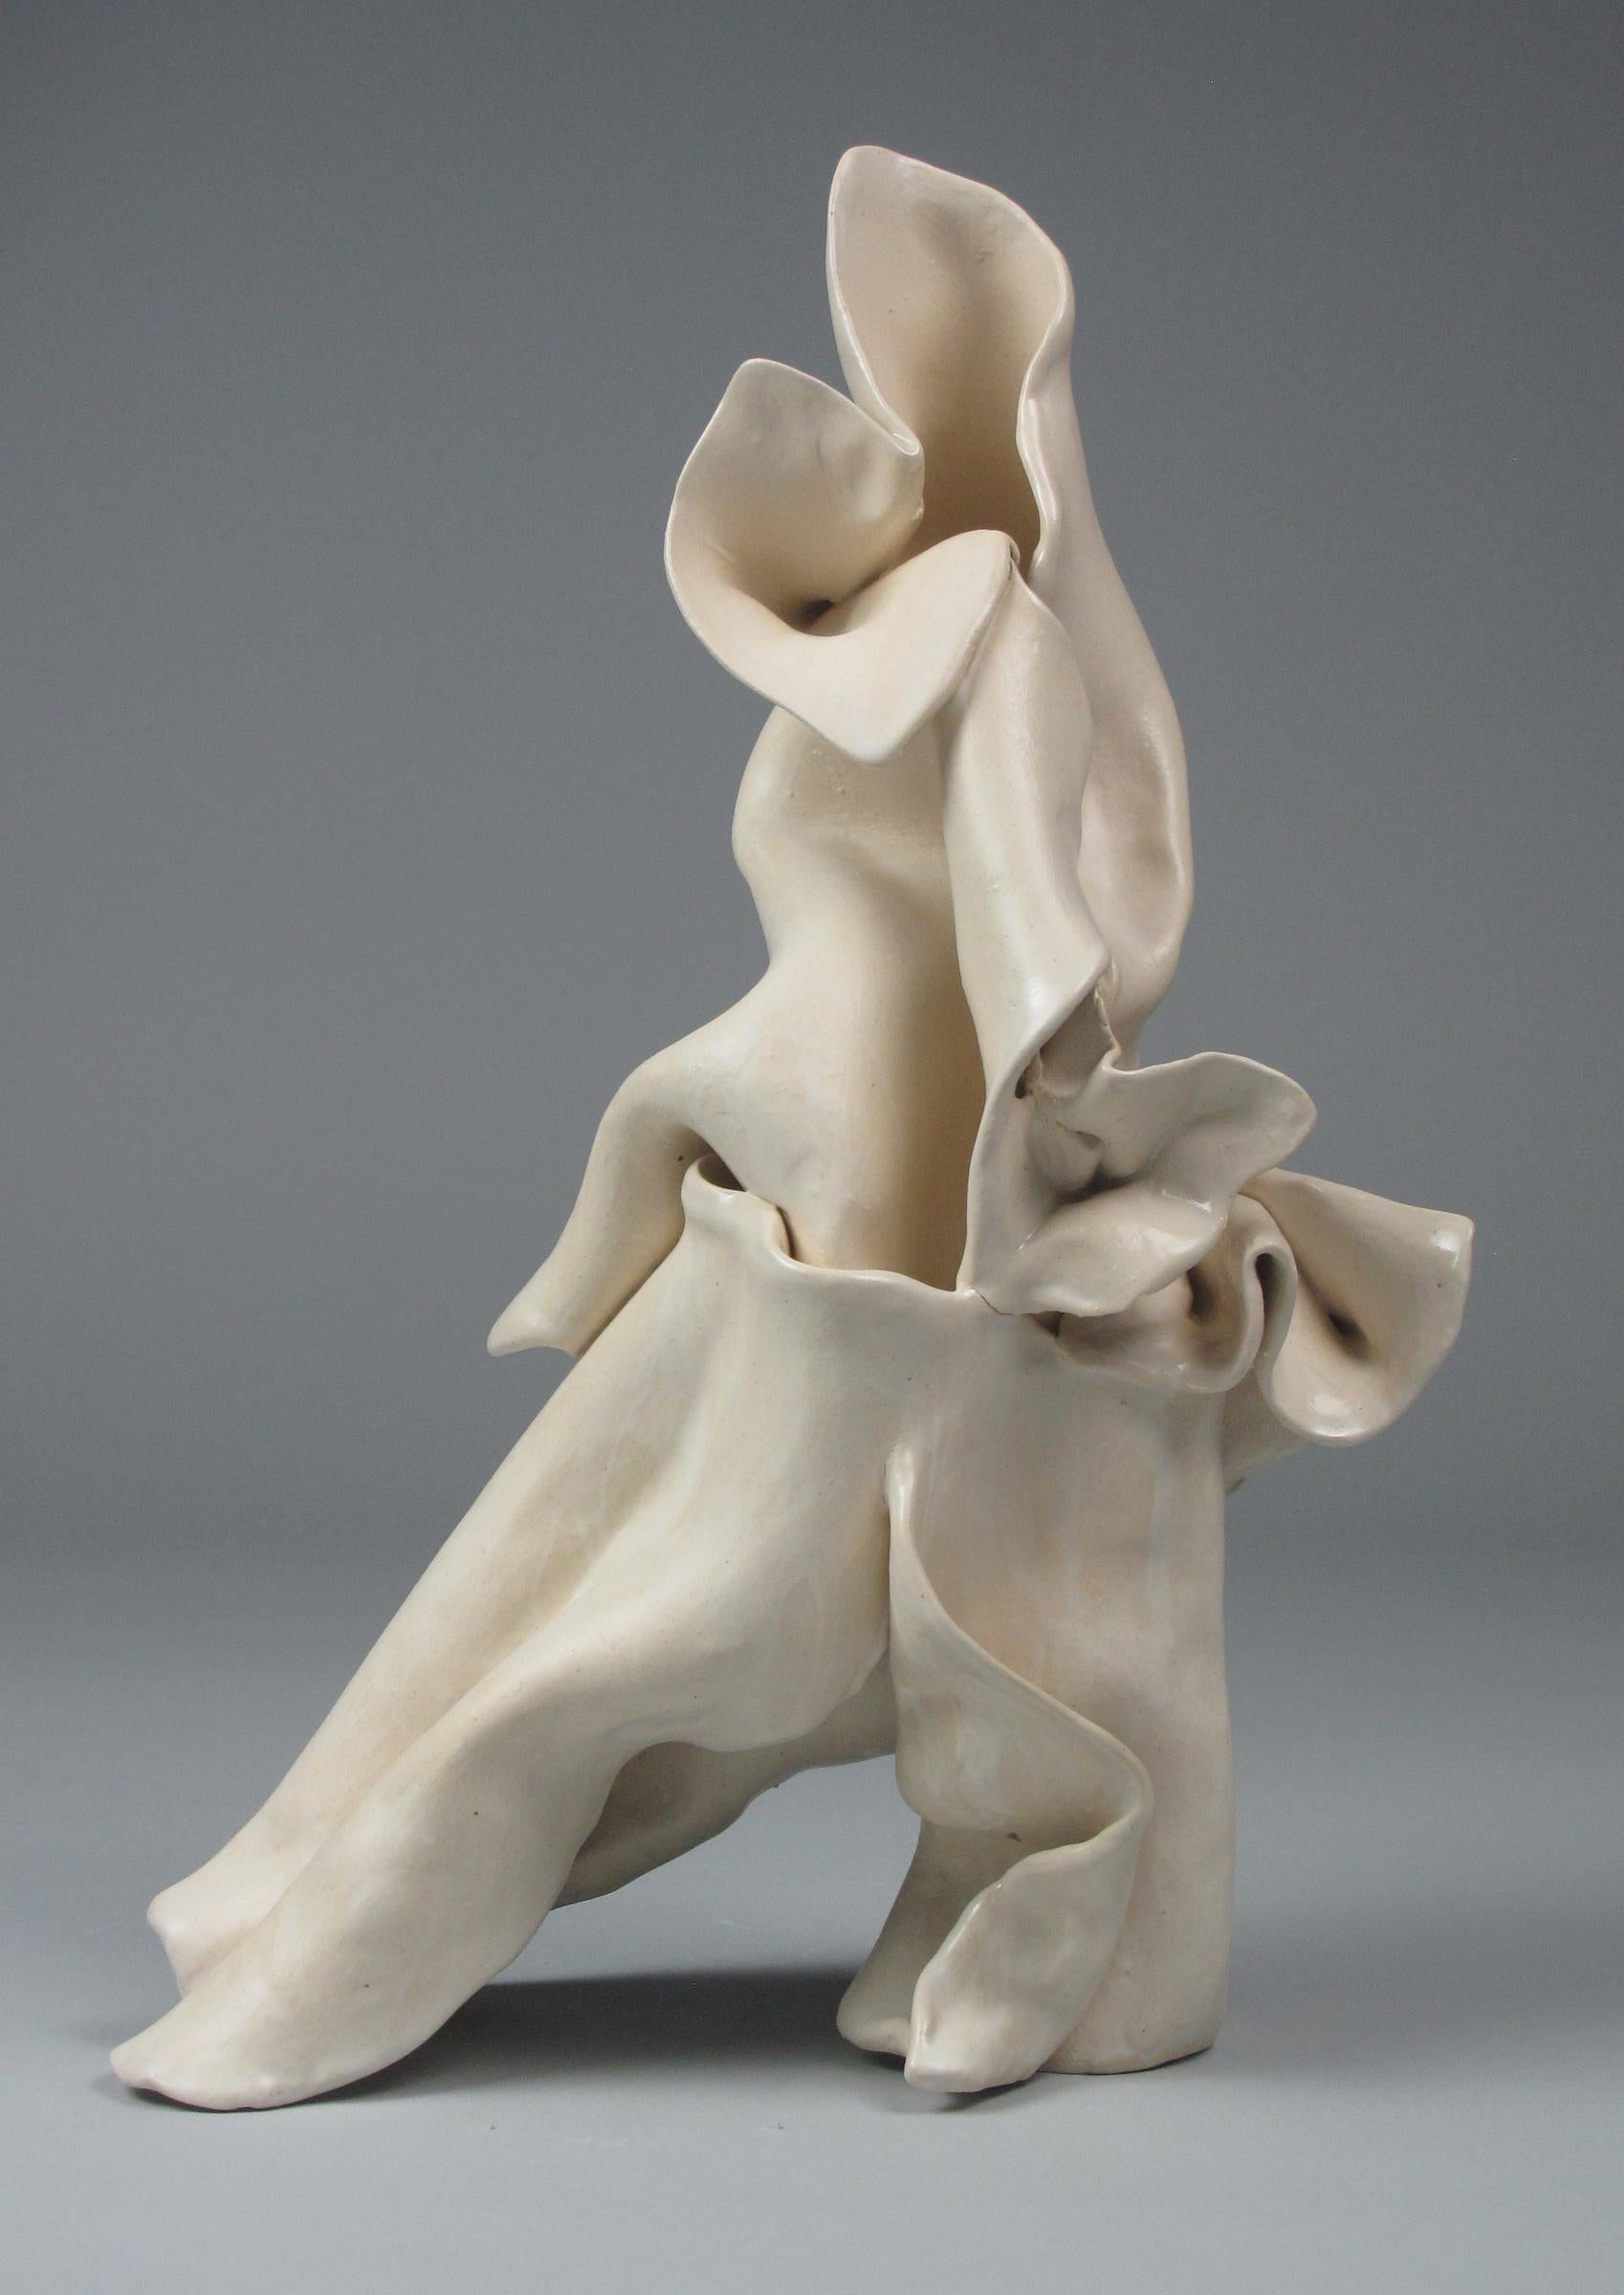 "Shift", gestural, ceramic, white, cream, stoneware, sculpture - Sculpture by Sara Fine-Wilson